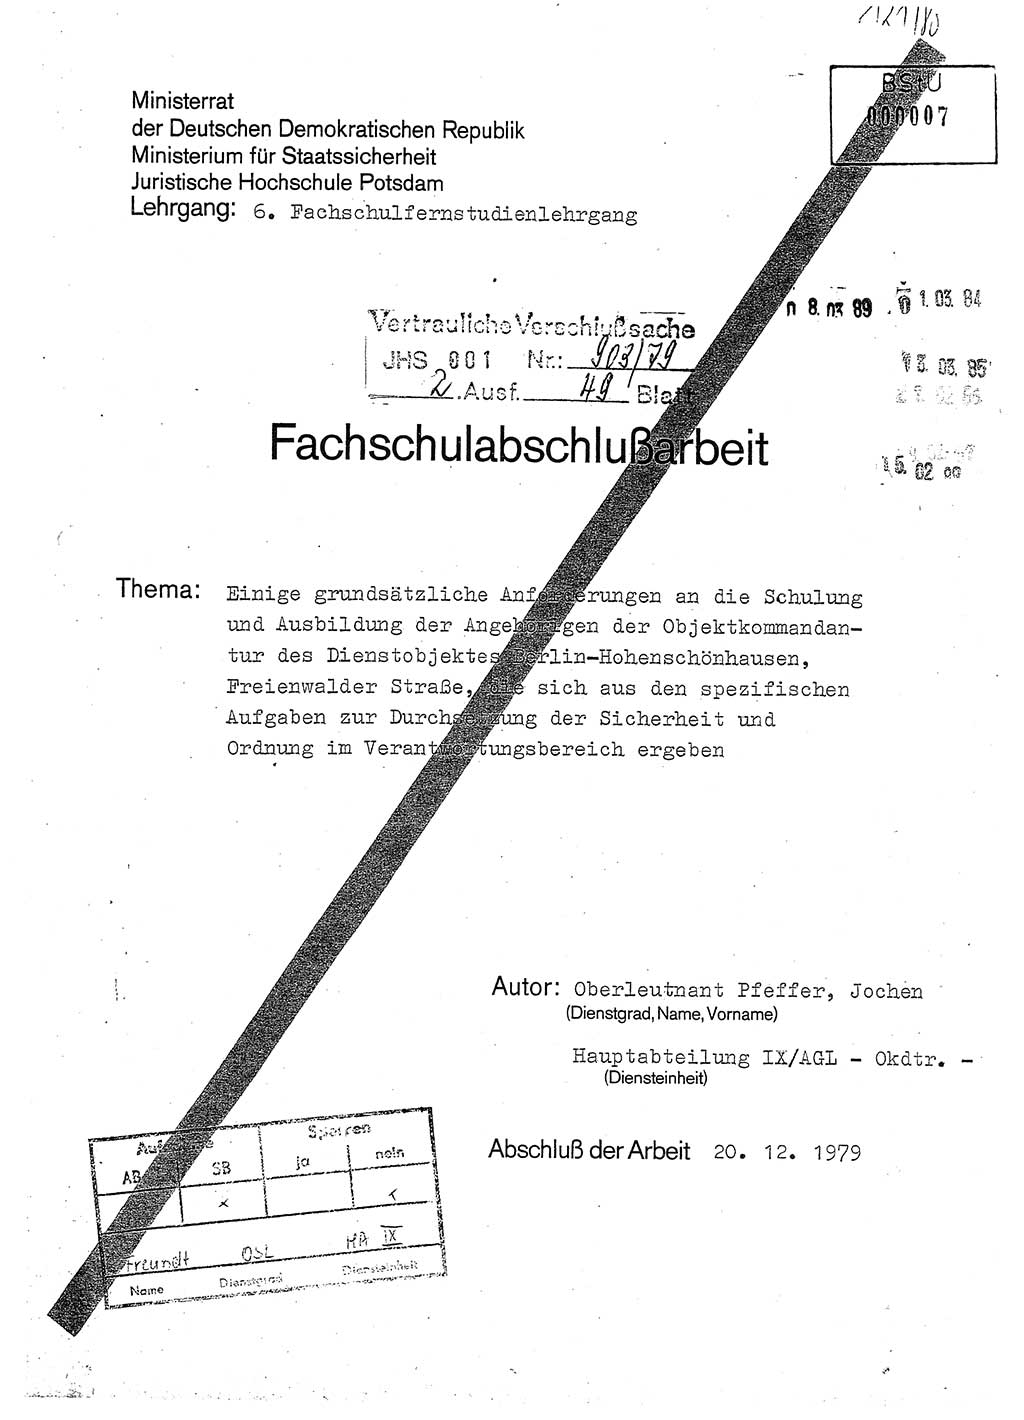 Fachschulabschlußarbeit Oberleutnant Jochen Pfeffer (HA Ⅸ/AGL), Ministerium für Staatssicherheit (MfS) [Deutsche Demokratische Republik (DDR)], Juristische Hochschule (JHS), Vertrauliche Verschlußsache (VVS) 001-903/79, Potsdam 1979, Seite 1 (FS-Abschl.-Arb. MfS DDR JHS VVS 001-903/79 1979, S. 1)